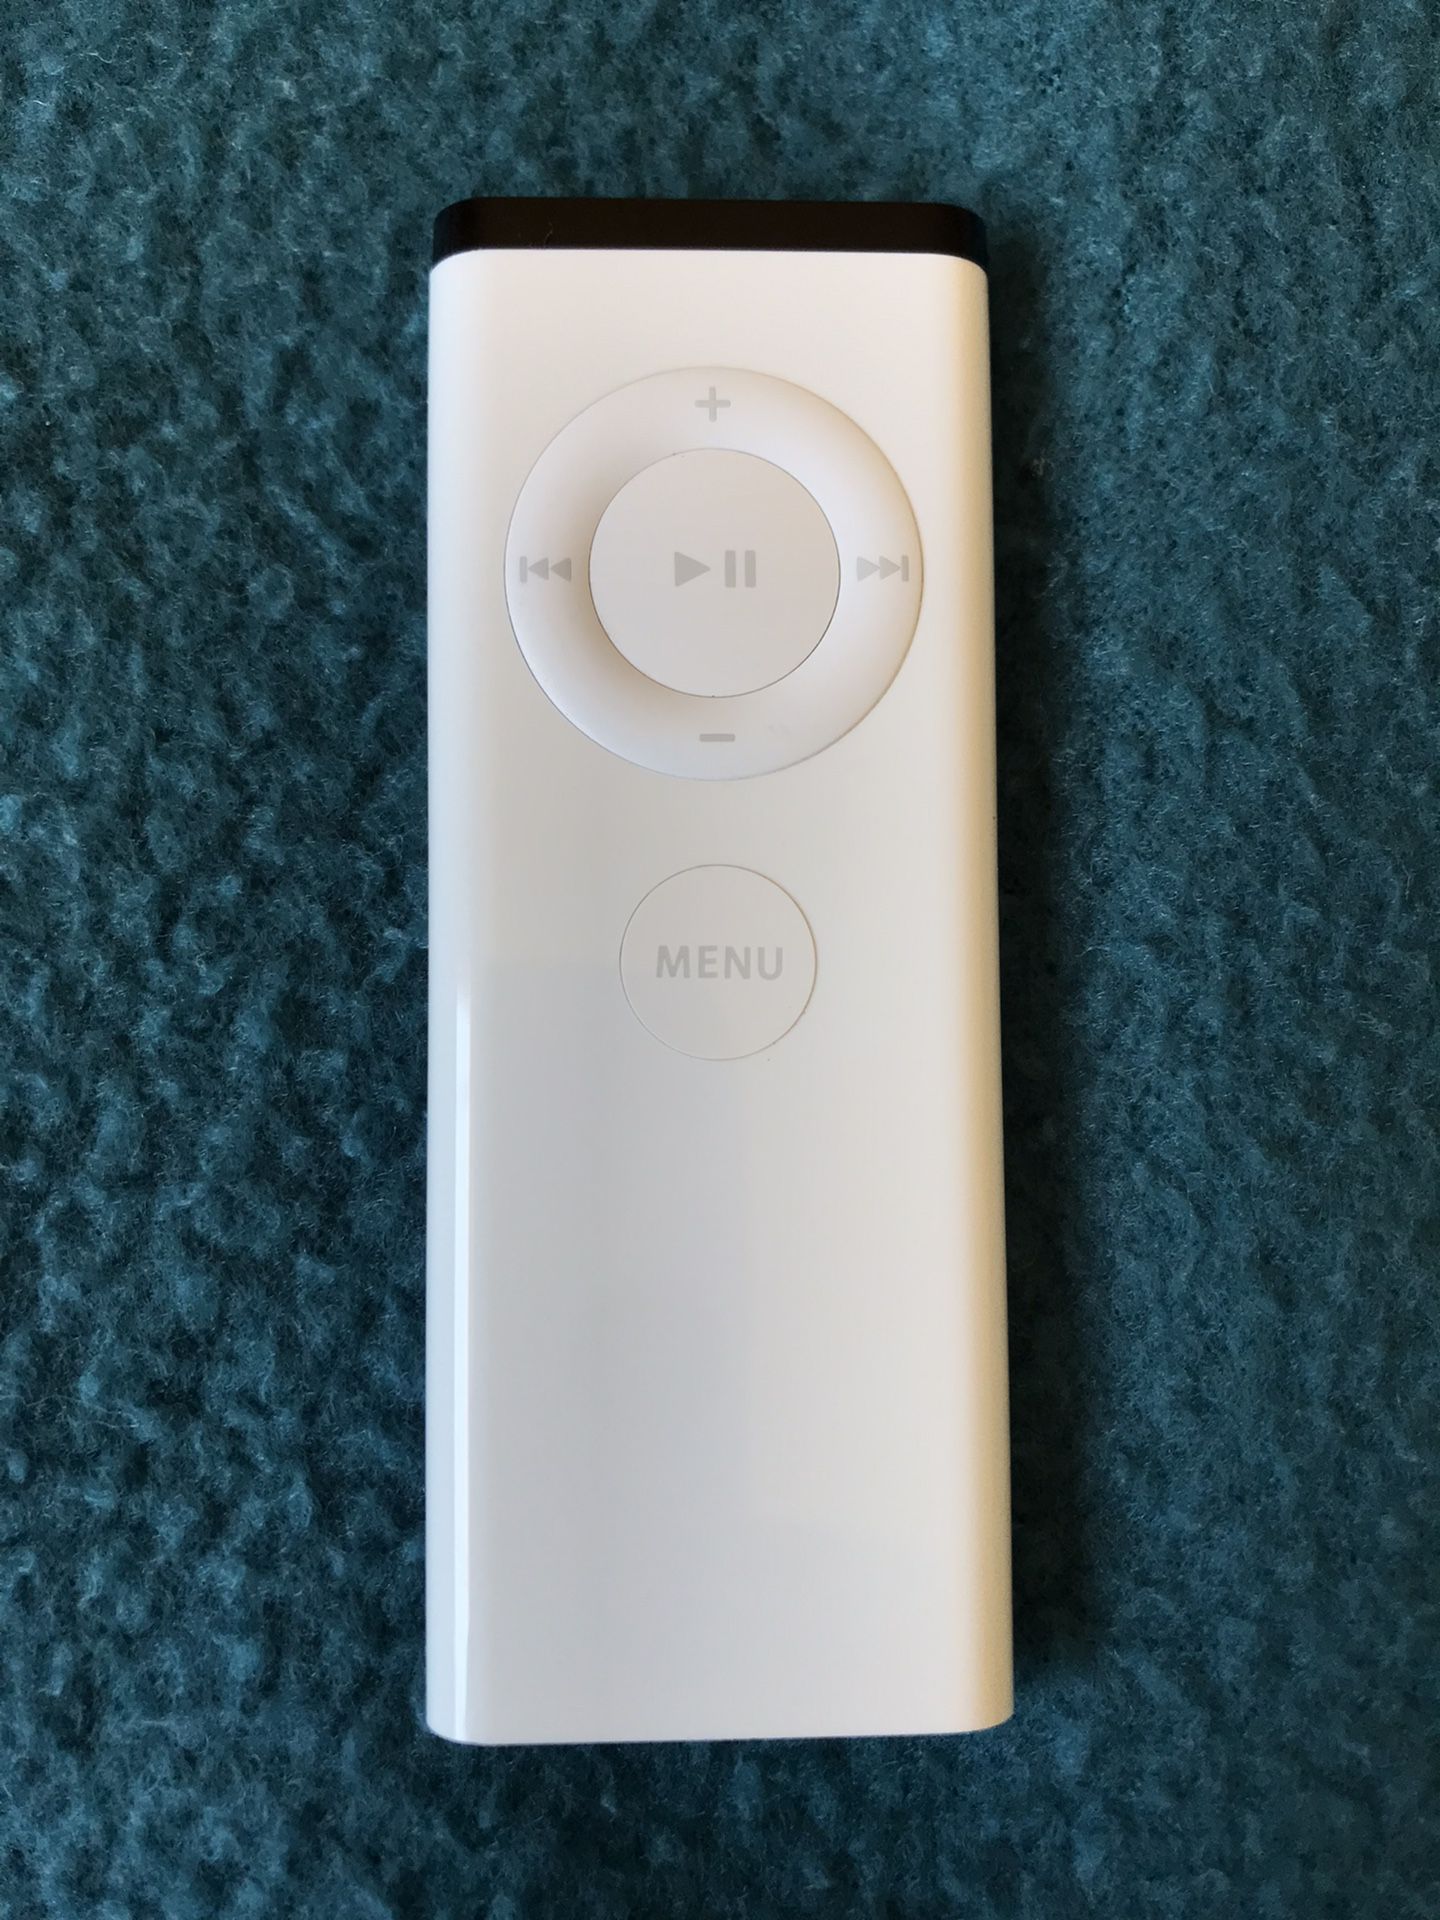 Apple Remote Control A1156